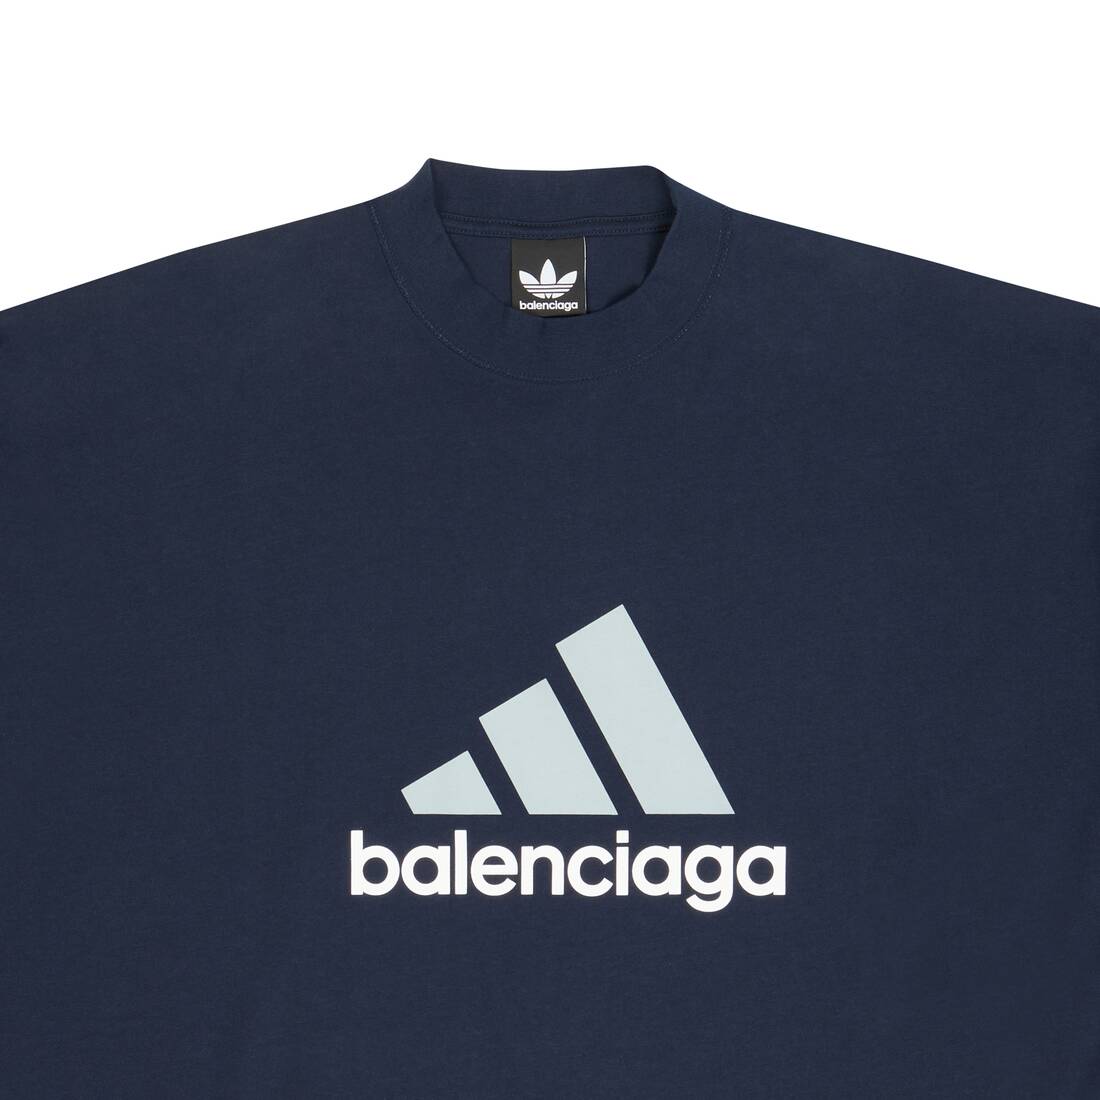 Balenciaga / Adidas オーバーサイズtシャツ で ネイビーブルー